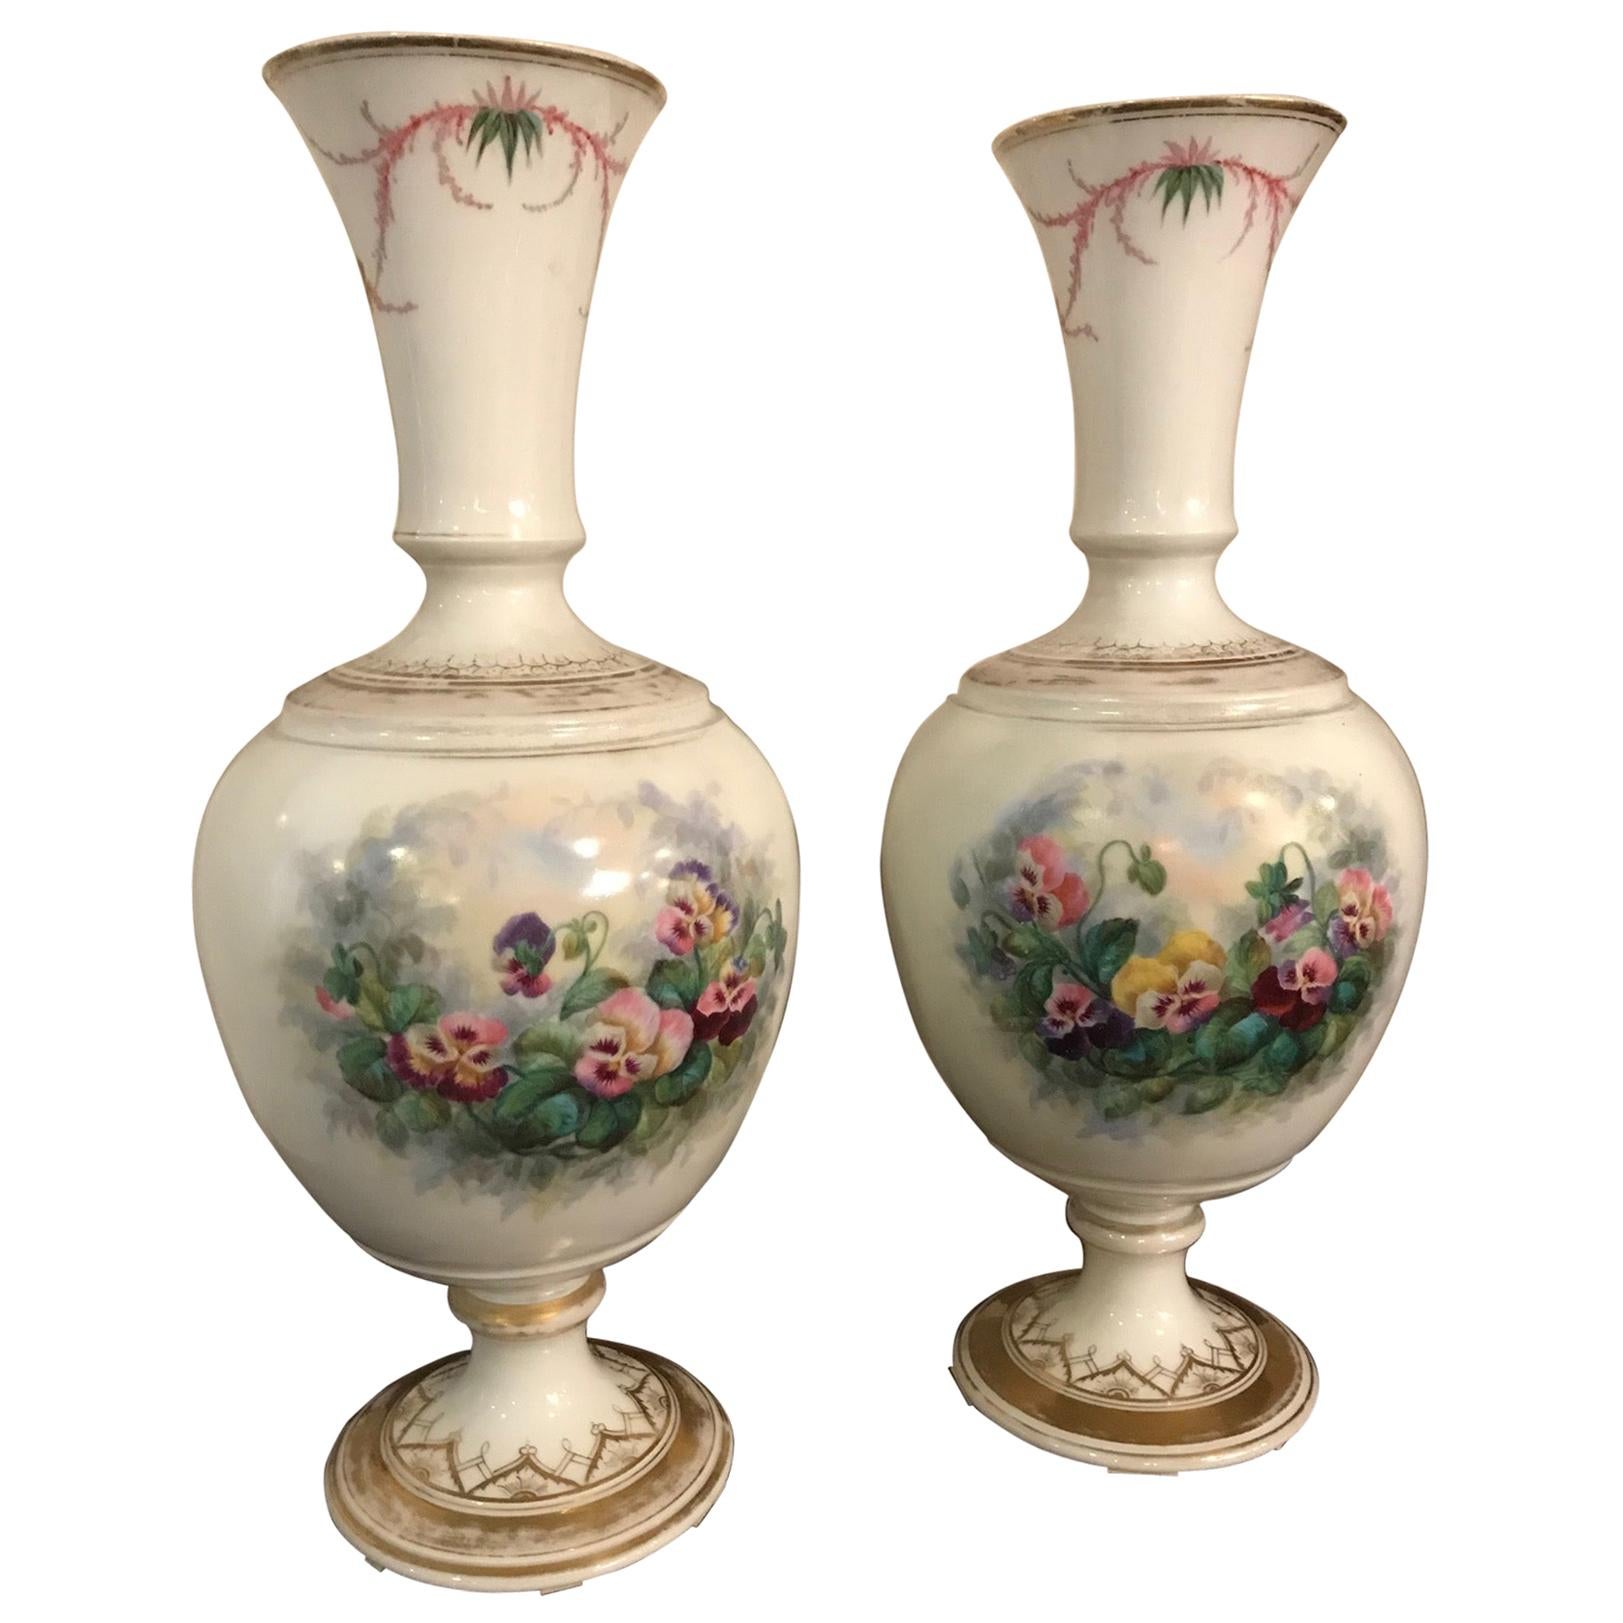 Paire de vases décorés de fleurs françaises du 19ème siècle, années 1850